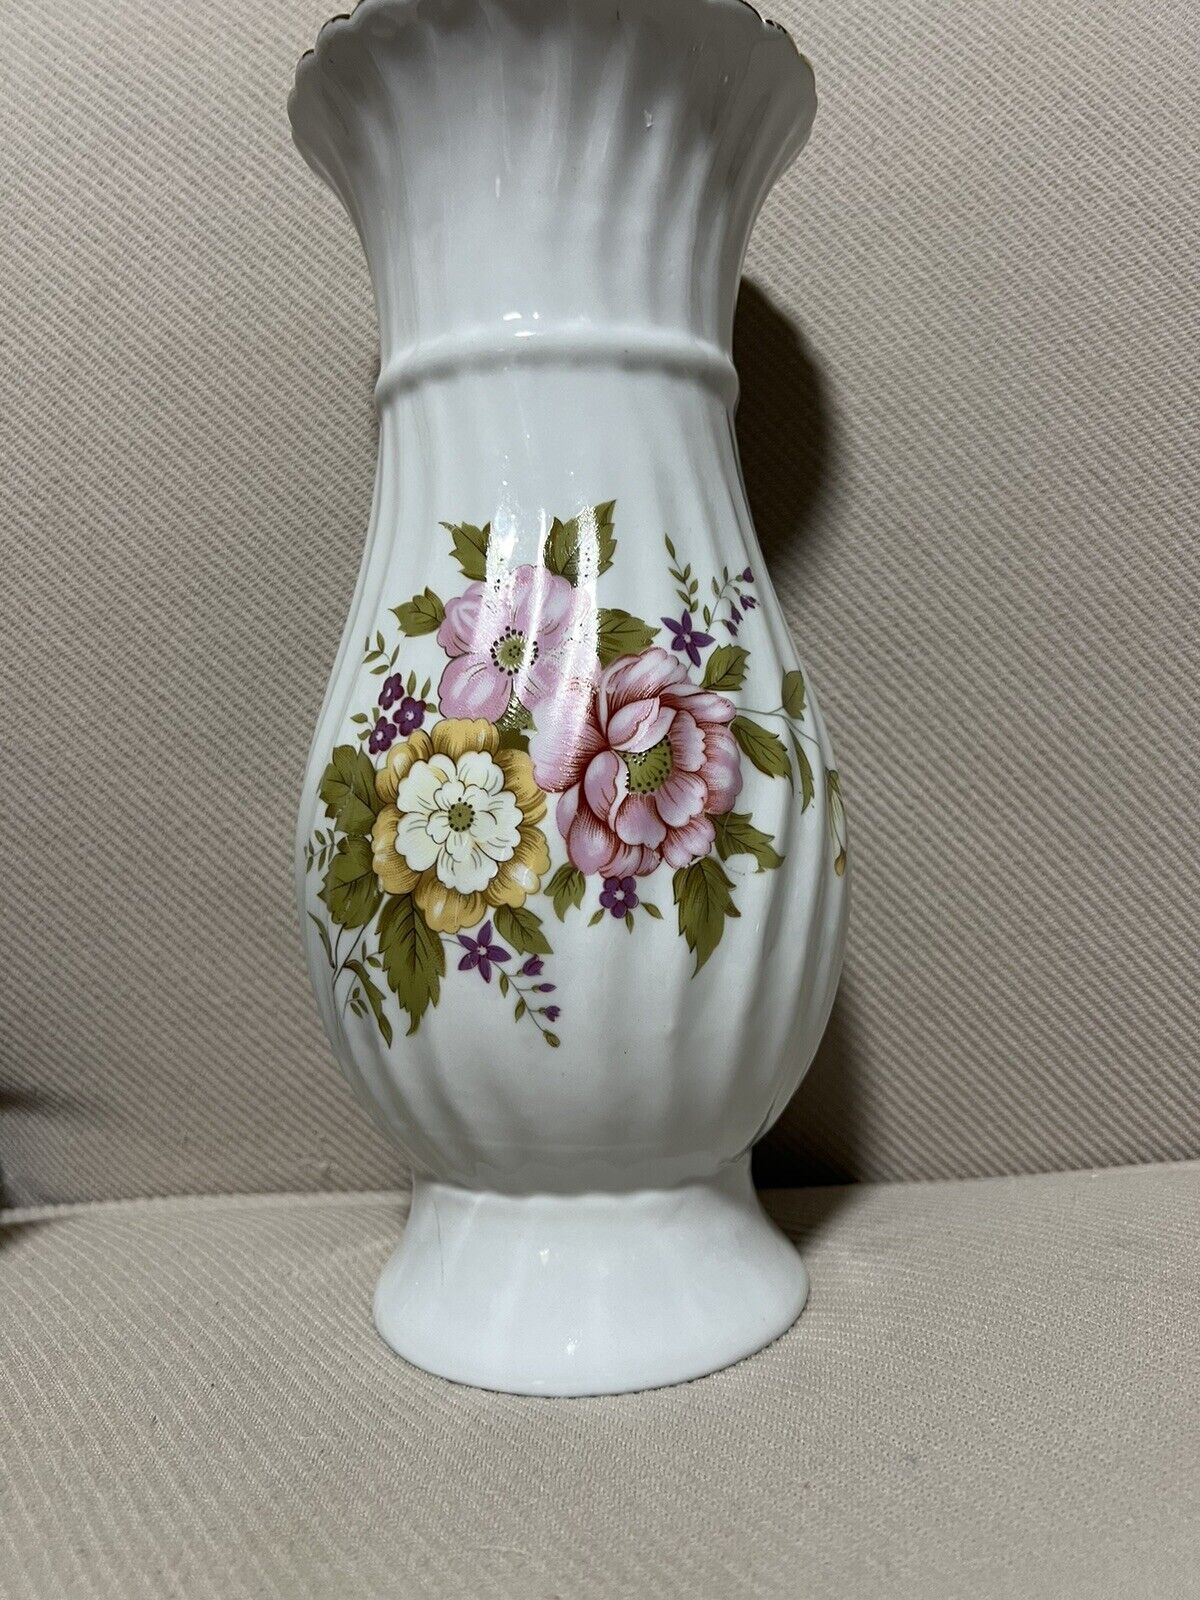 Vintage Ceramic Pink and White Dogwood Floral Vase